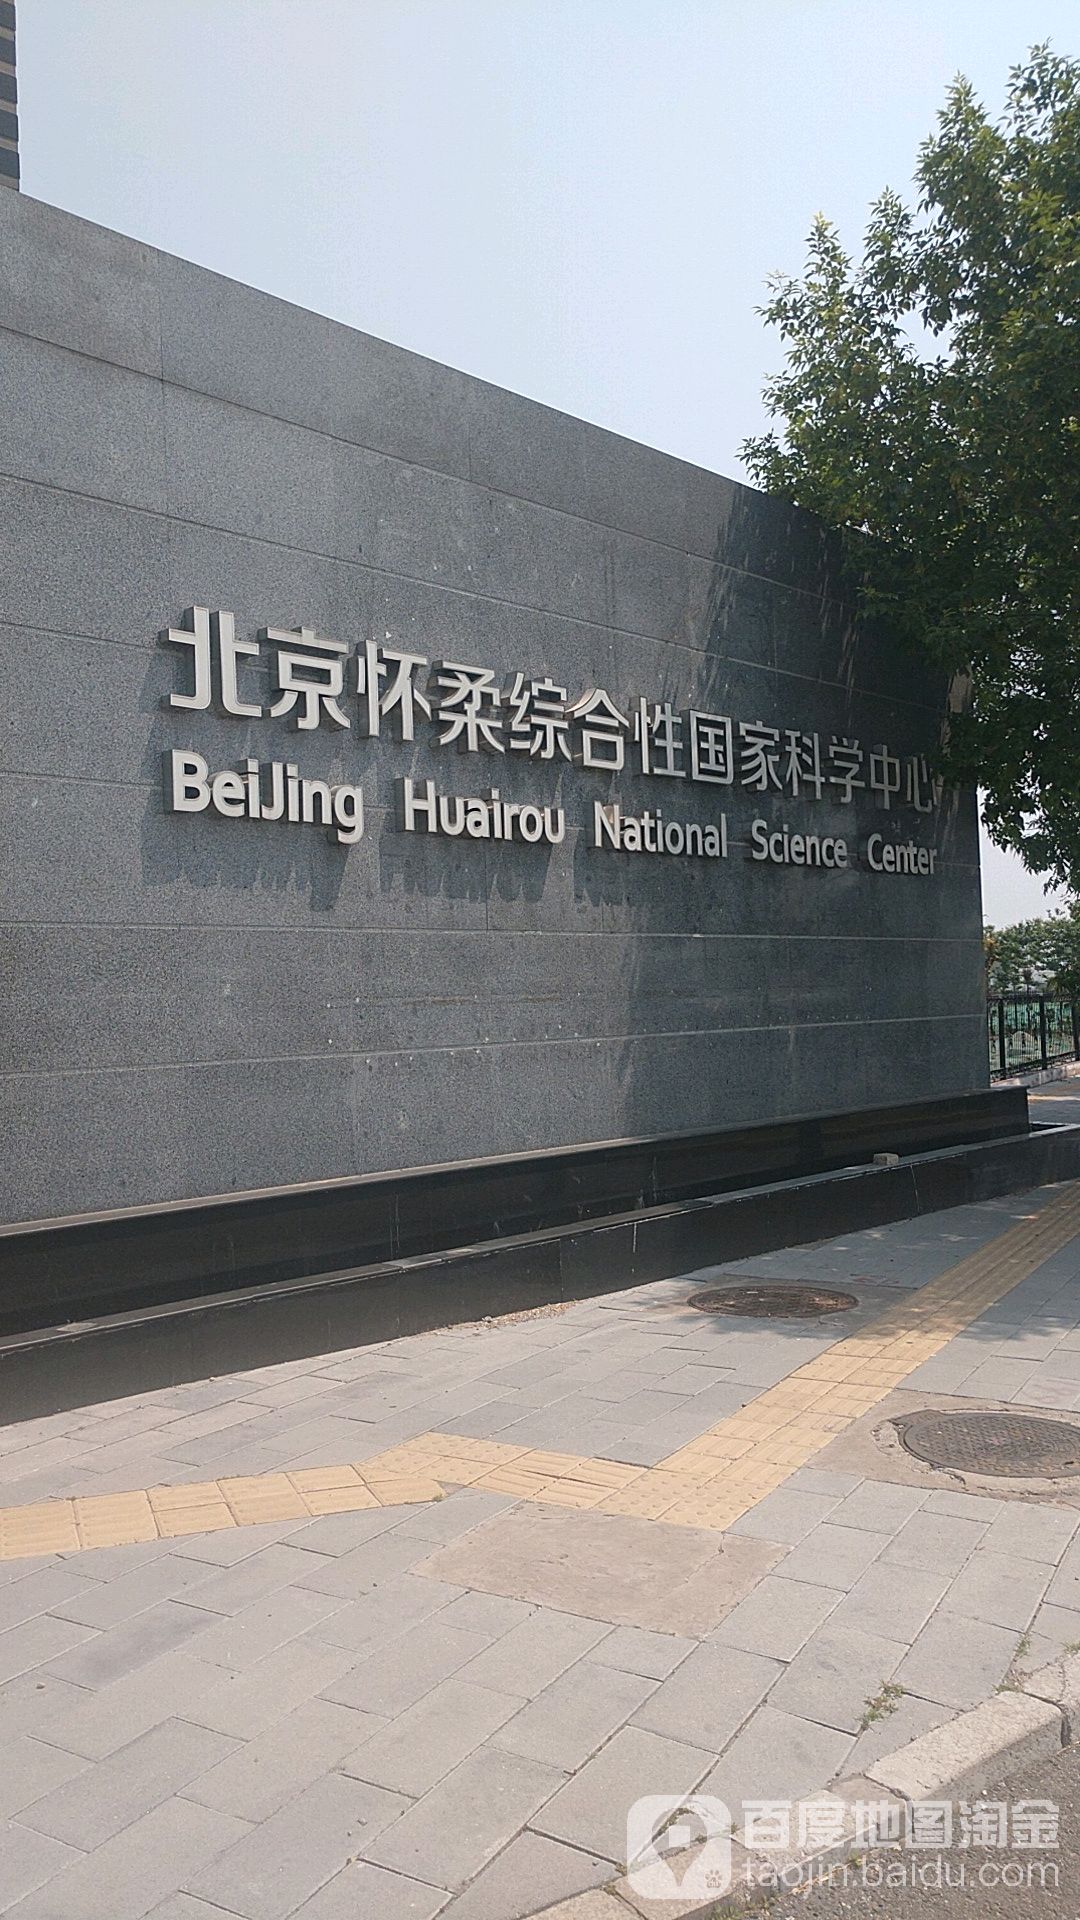 北京怀柔综合性国家科学中心